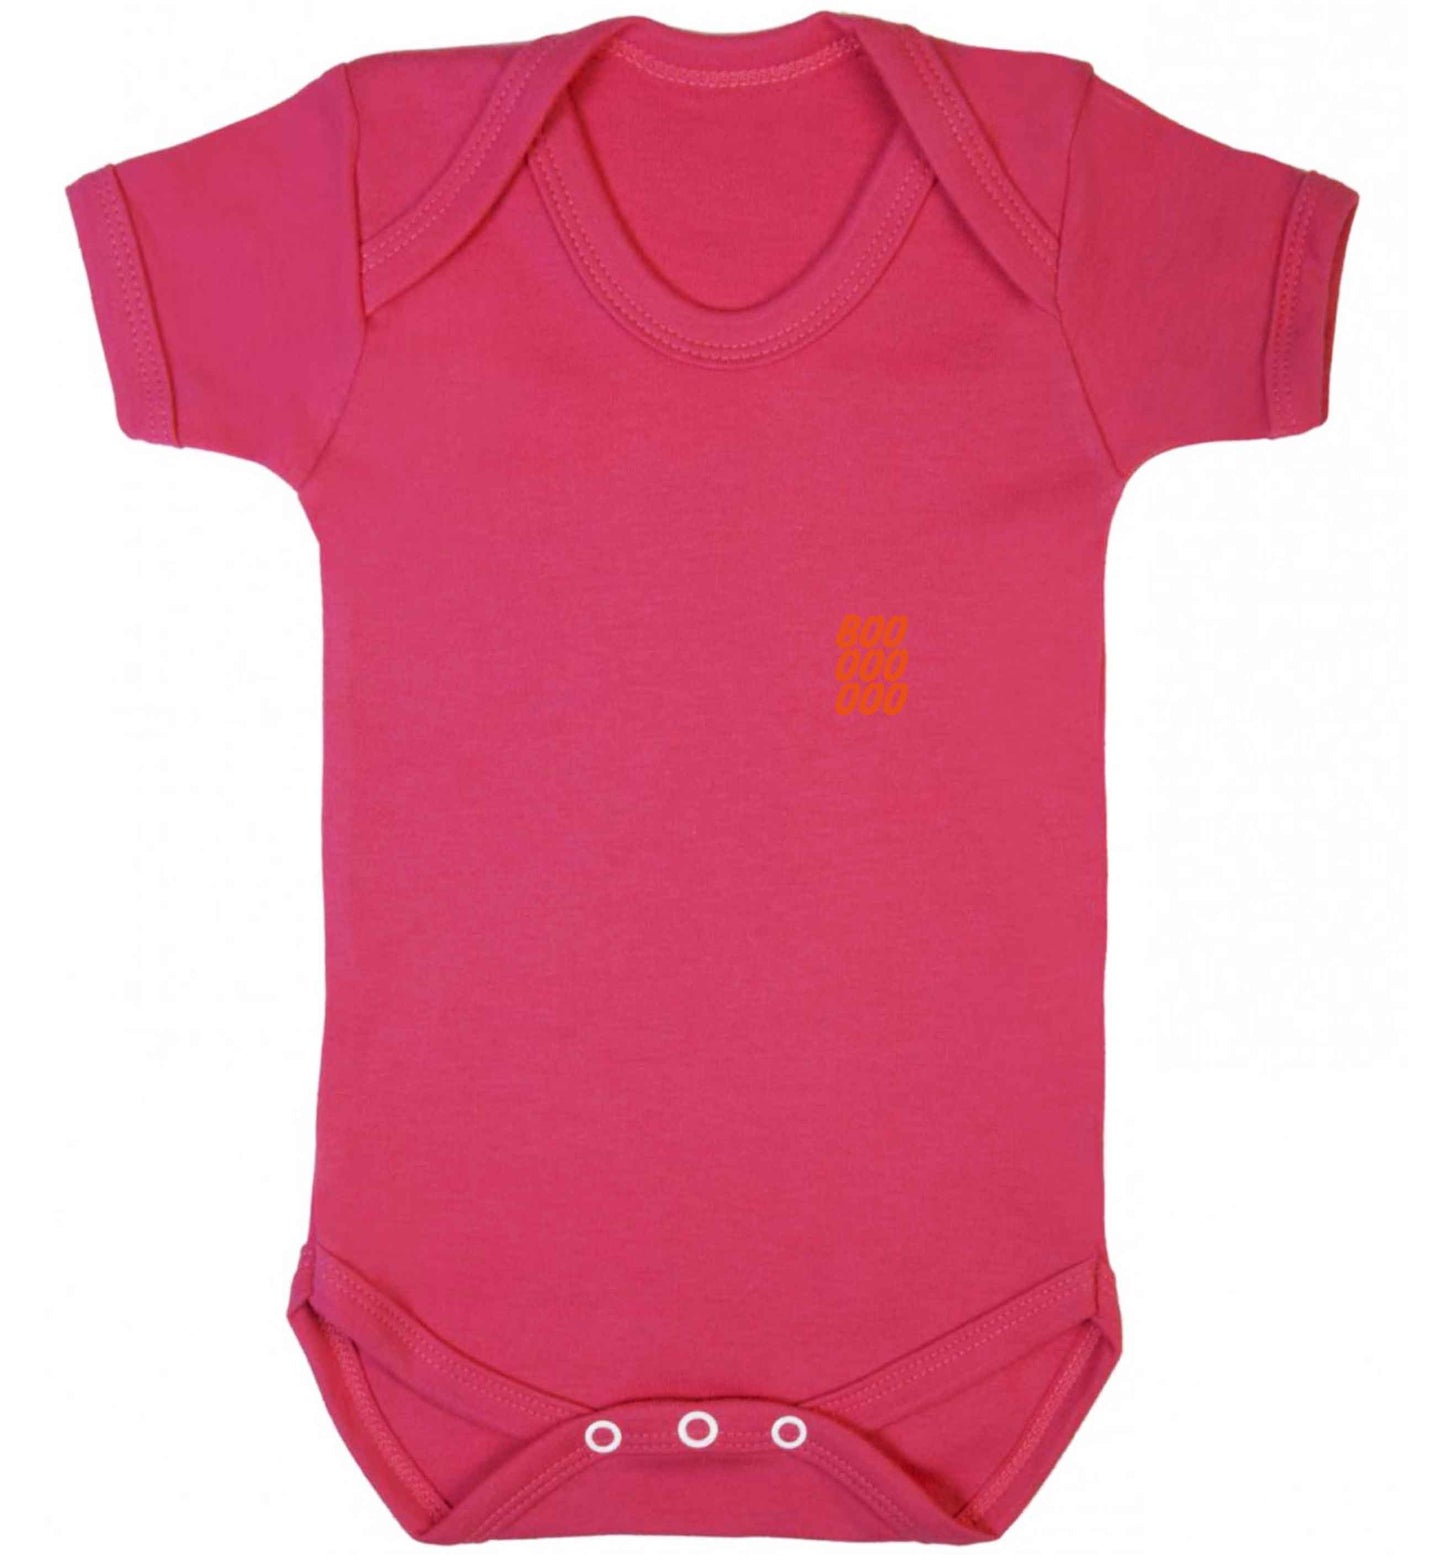 Boo pocket baby vest dark pink 18-24 months